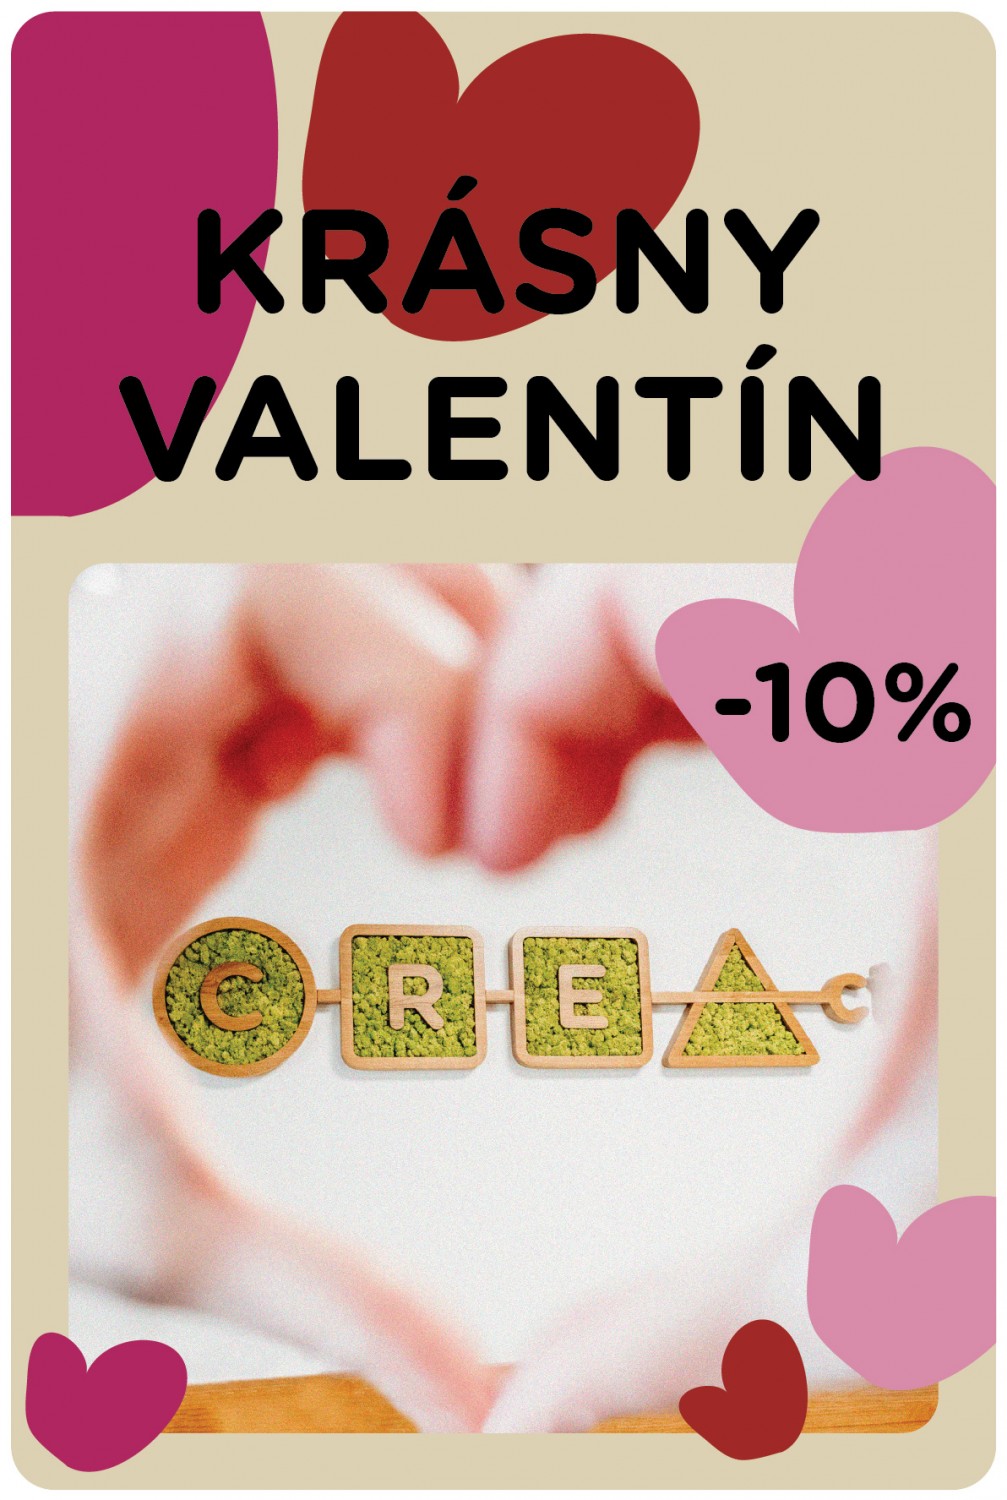 Zľava -10% na všetko počas valentínskeho obdobia v creActive. Na obrázku sú farebné srdiečka a logo creActive s rukami v tvare srdca.